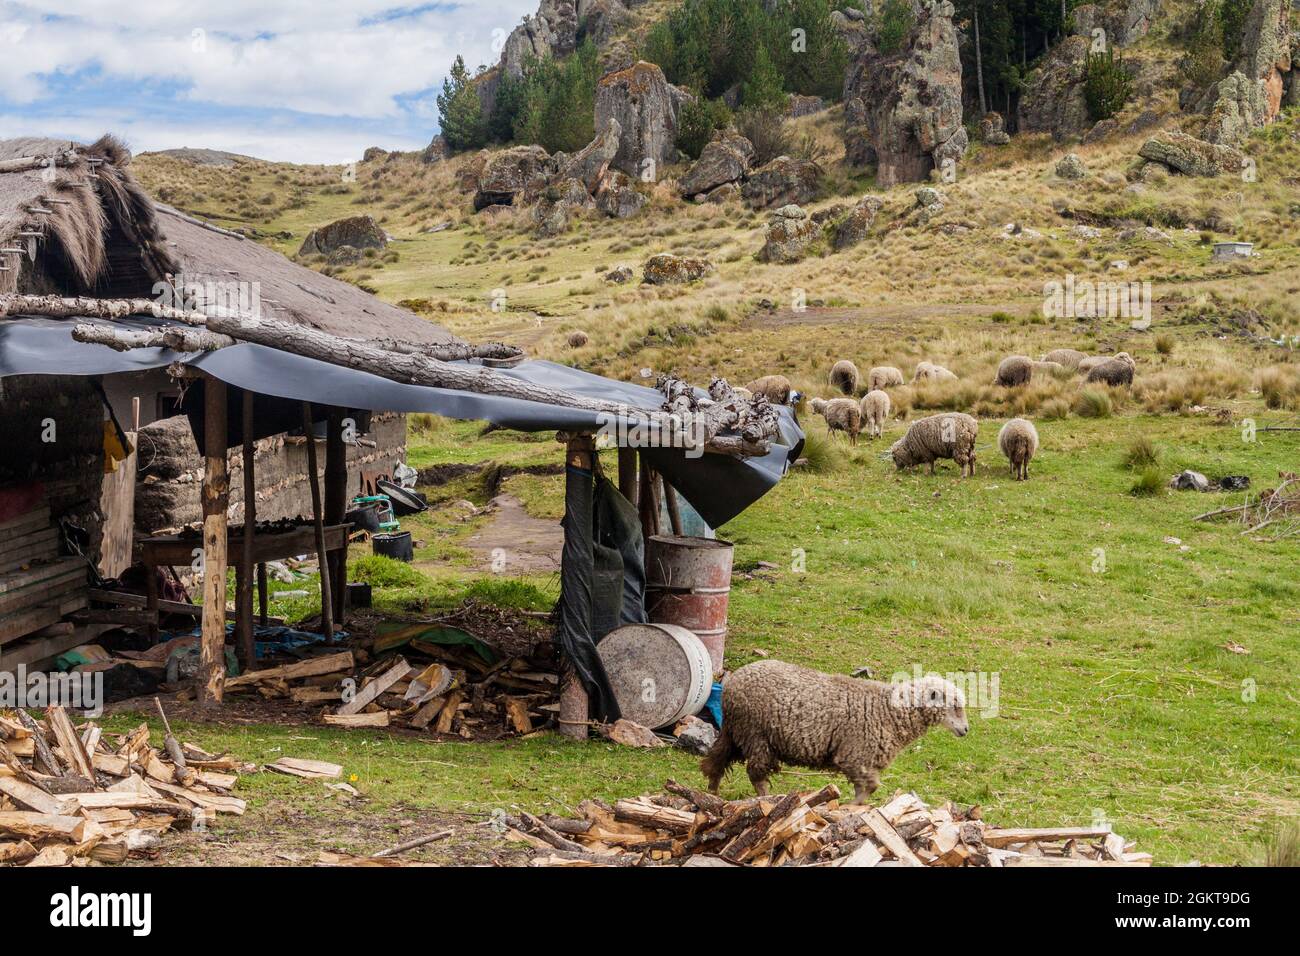 Mandria di pecore e una casa rurale vicino a Los Frailones (Monaci di pietra), formazioni rocciose vicino Cajamarca, Perù. Foto Stock